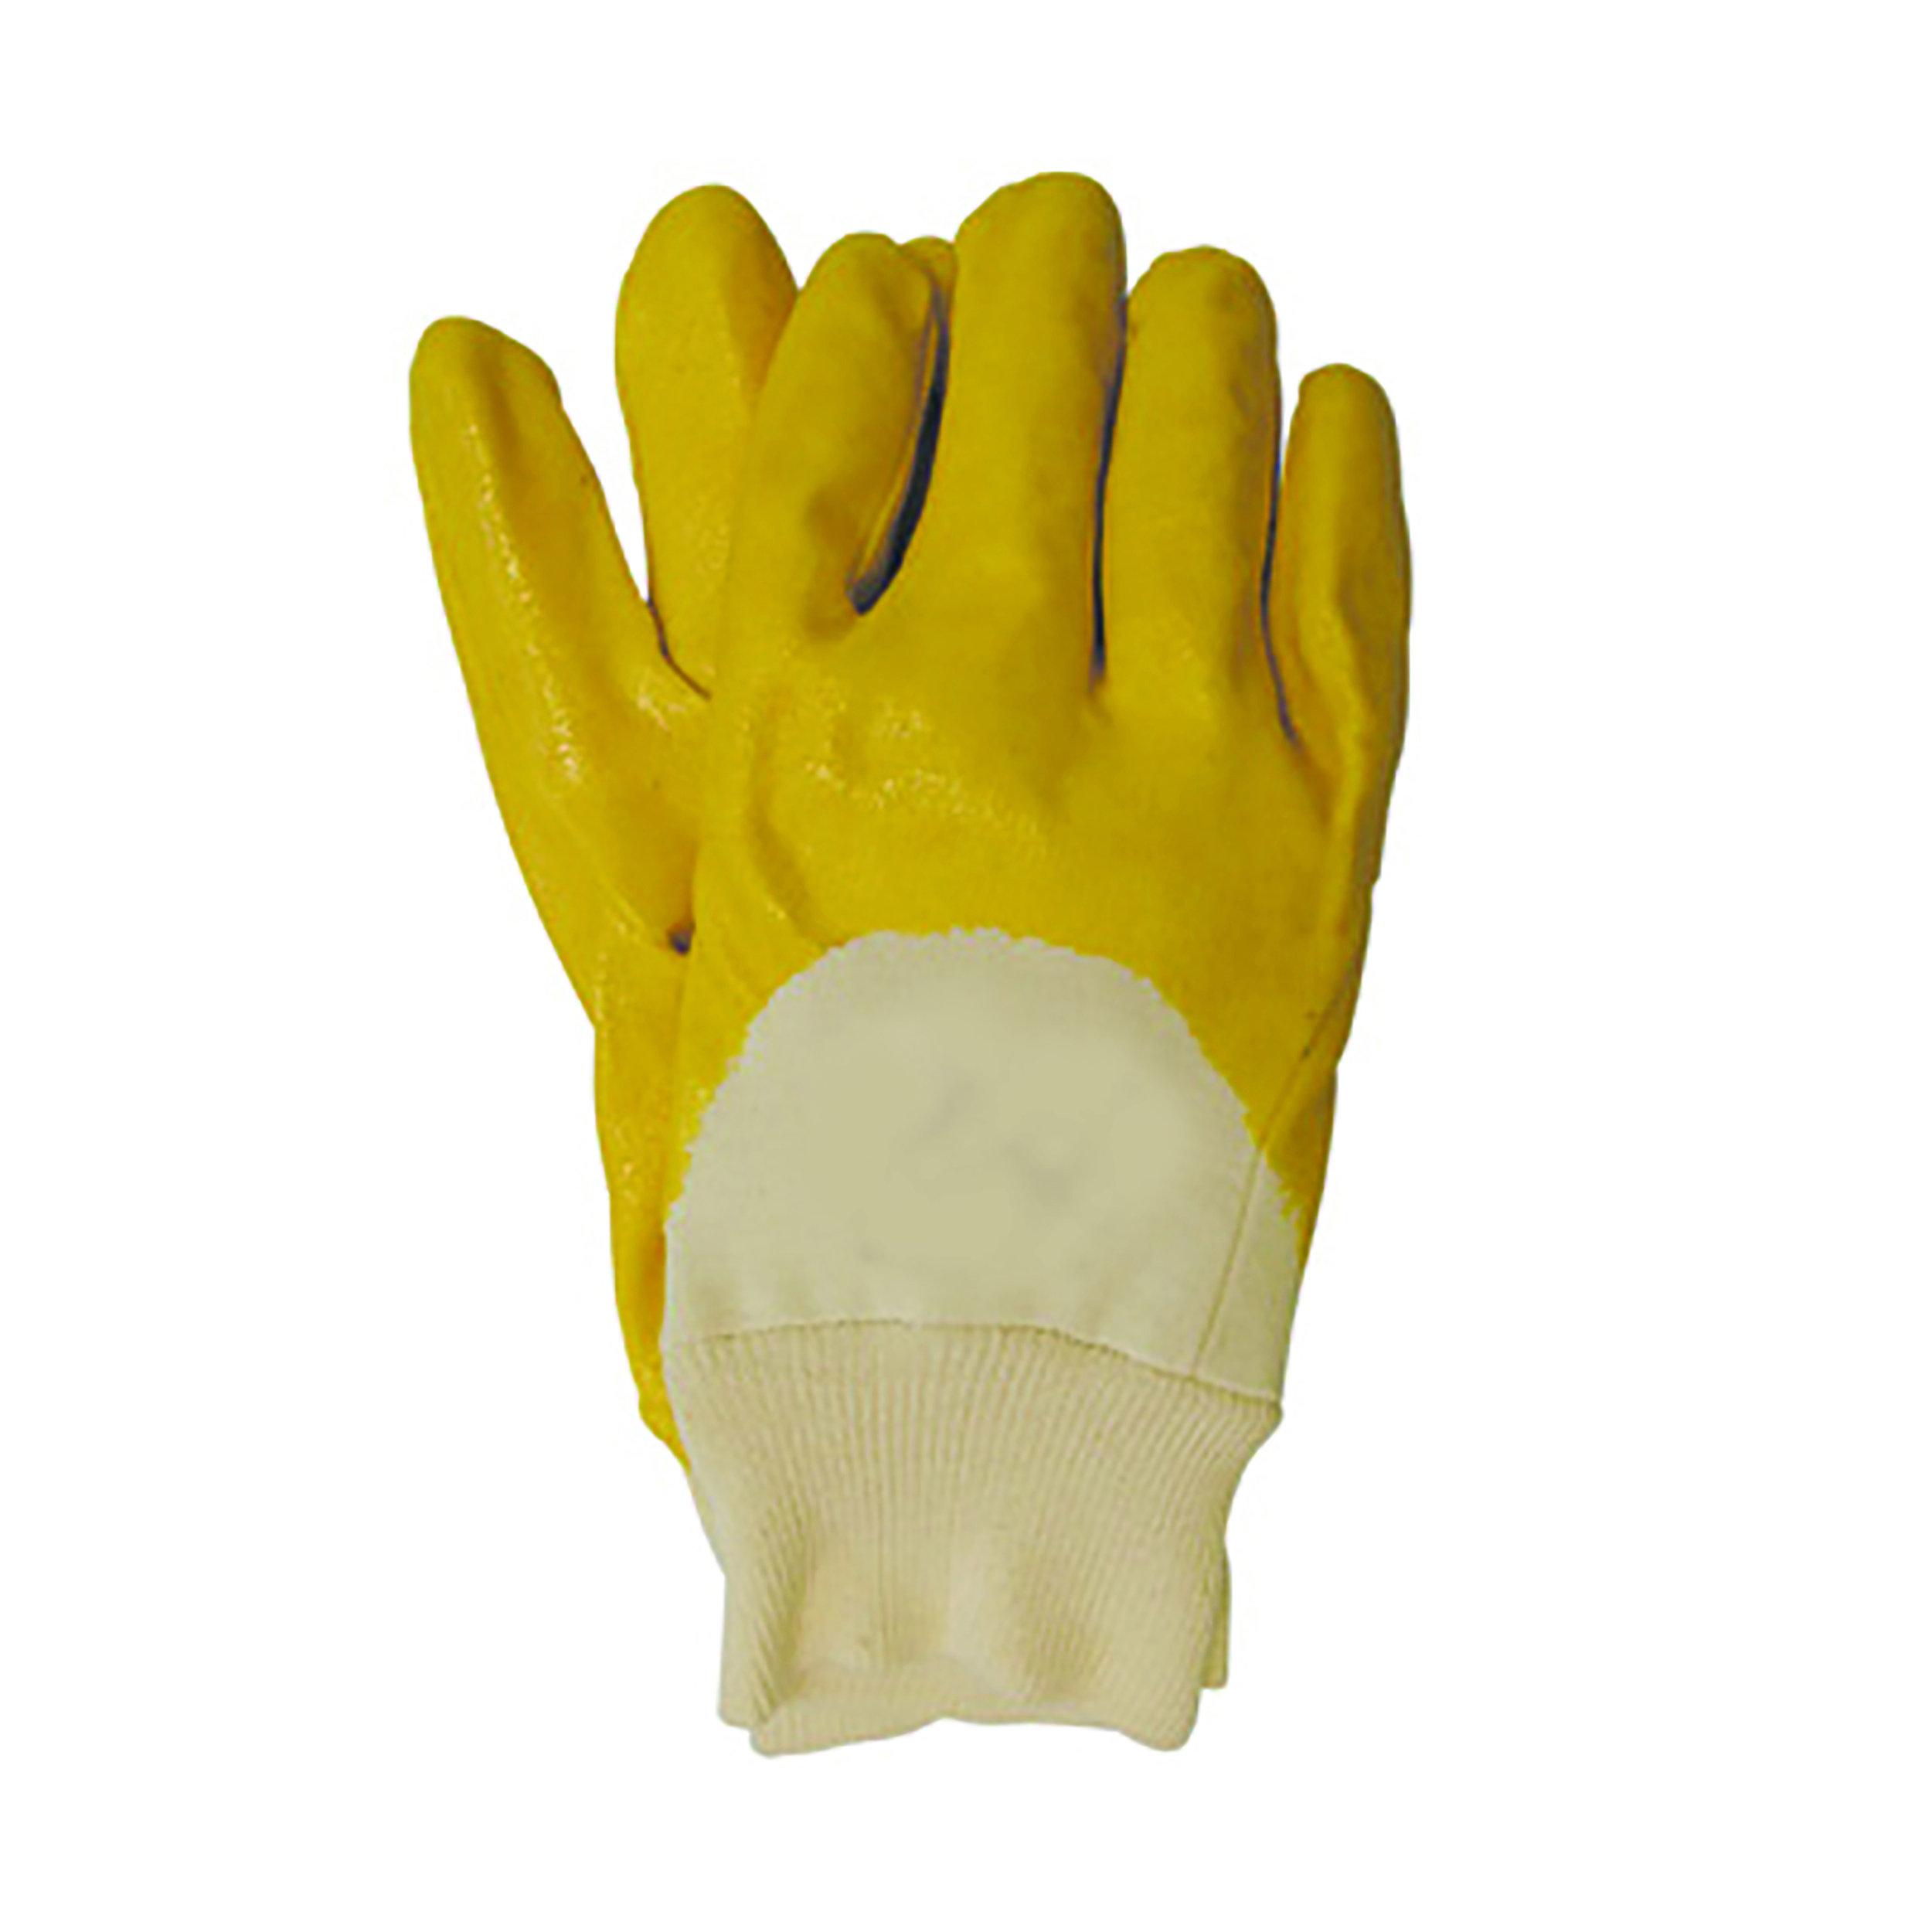 Nitril-Handschuh, gelb, aus Baumwoll-Trikotfutter. Für Montage -u. Lagerarbeiten in handw. Betrieben; Normen: Kat.2,EN388, Gr. 9